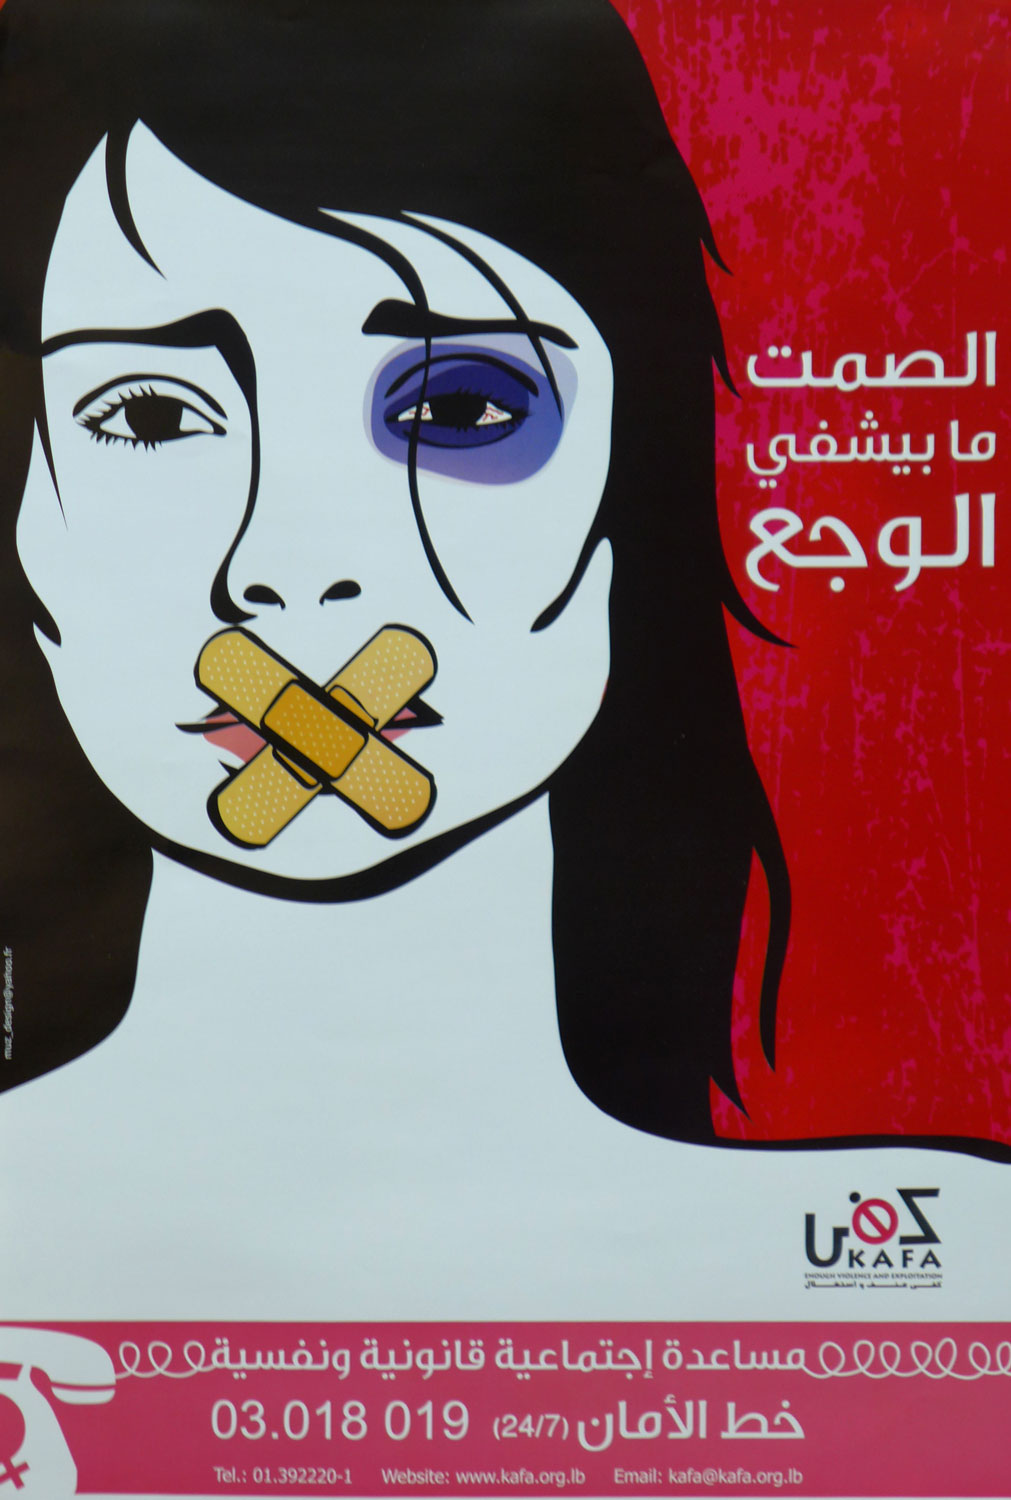 Une autre affiche de Kafa de lutte contre les violences faites aux femmes